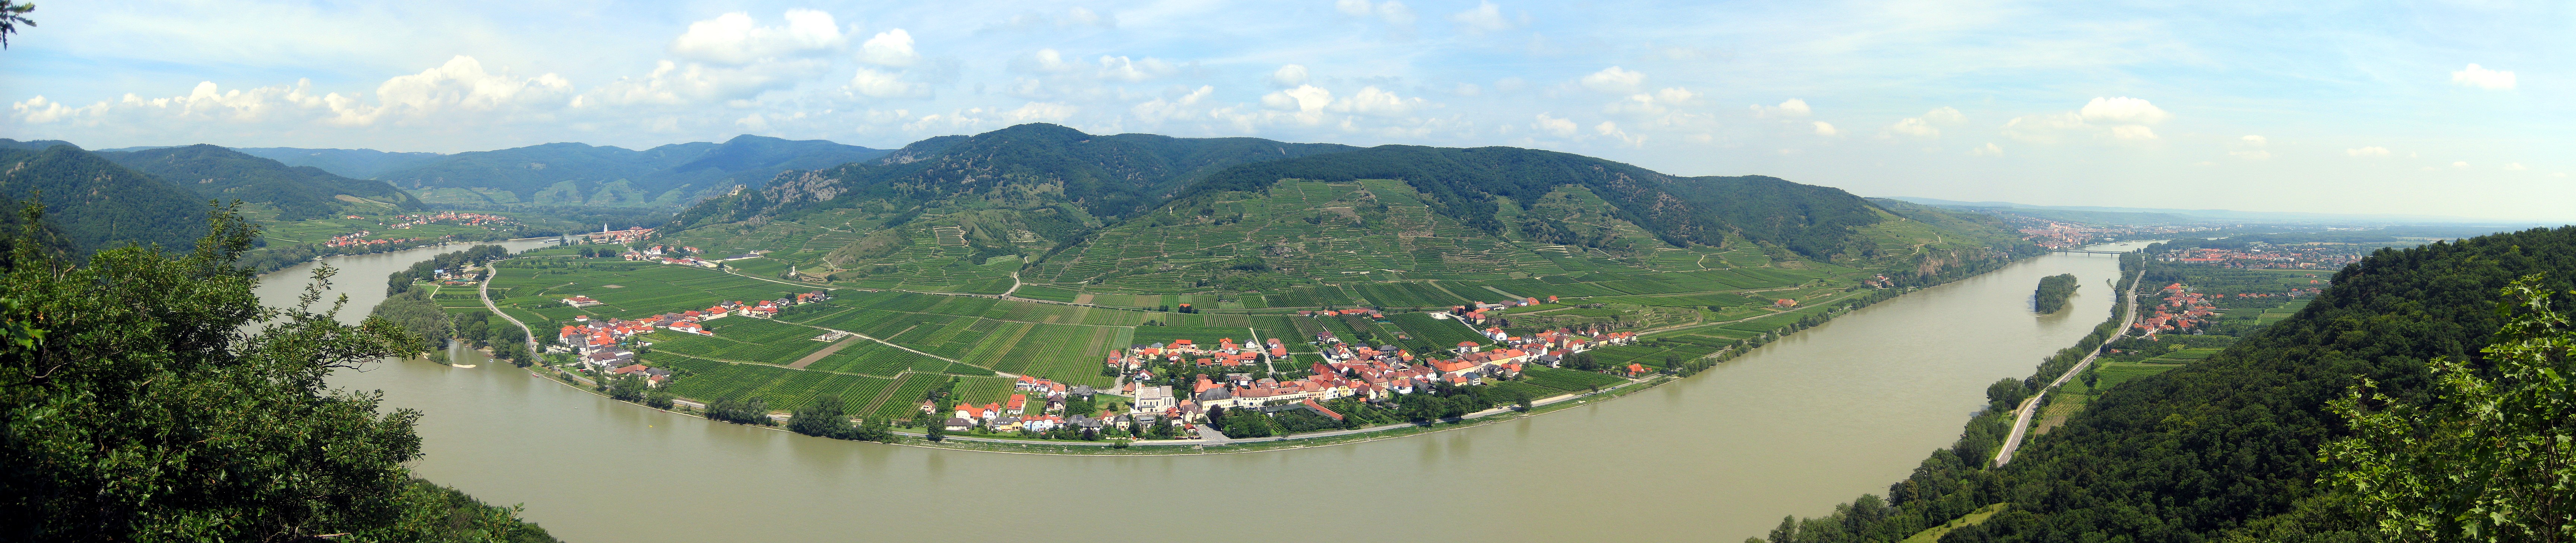 The Danube at Krems